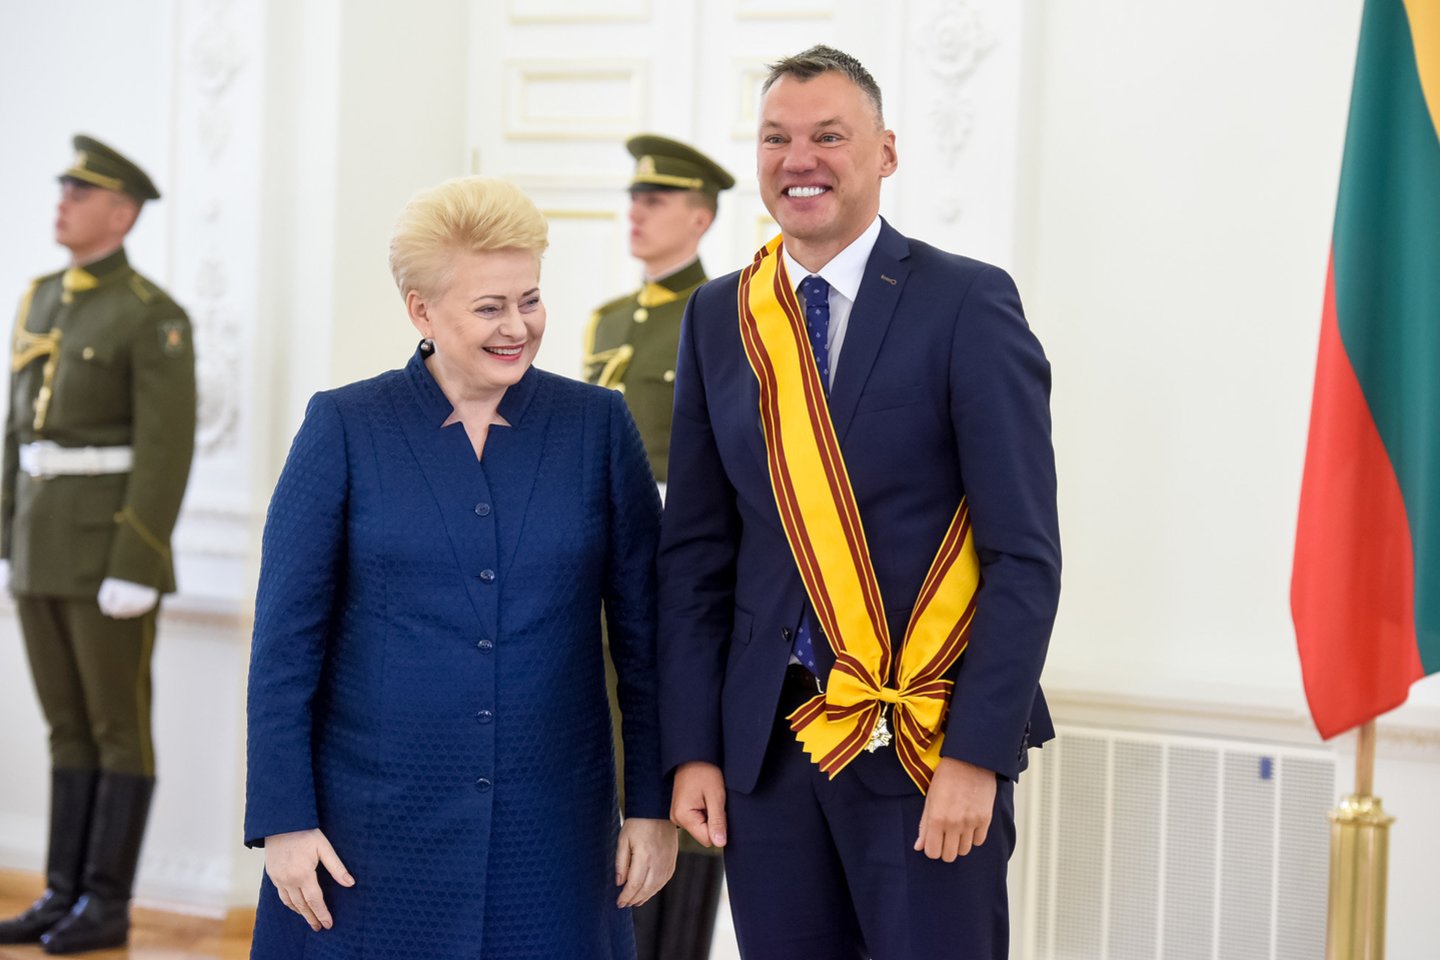  Prezidentė Dalia Grybauskaitė Šarūnui Jasikevičiui įteikė garbingiausią apdovanojimą.<br> D.Umbraso nuotr.